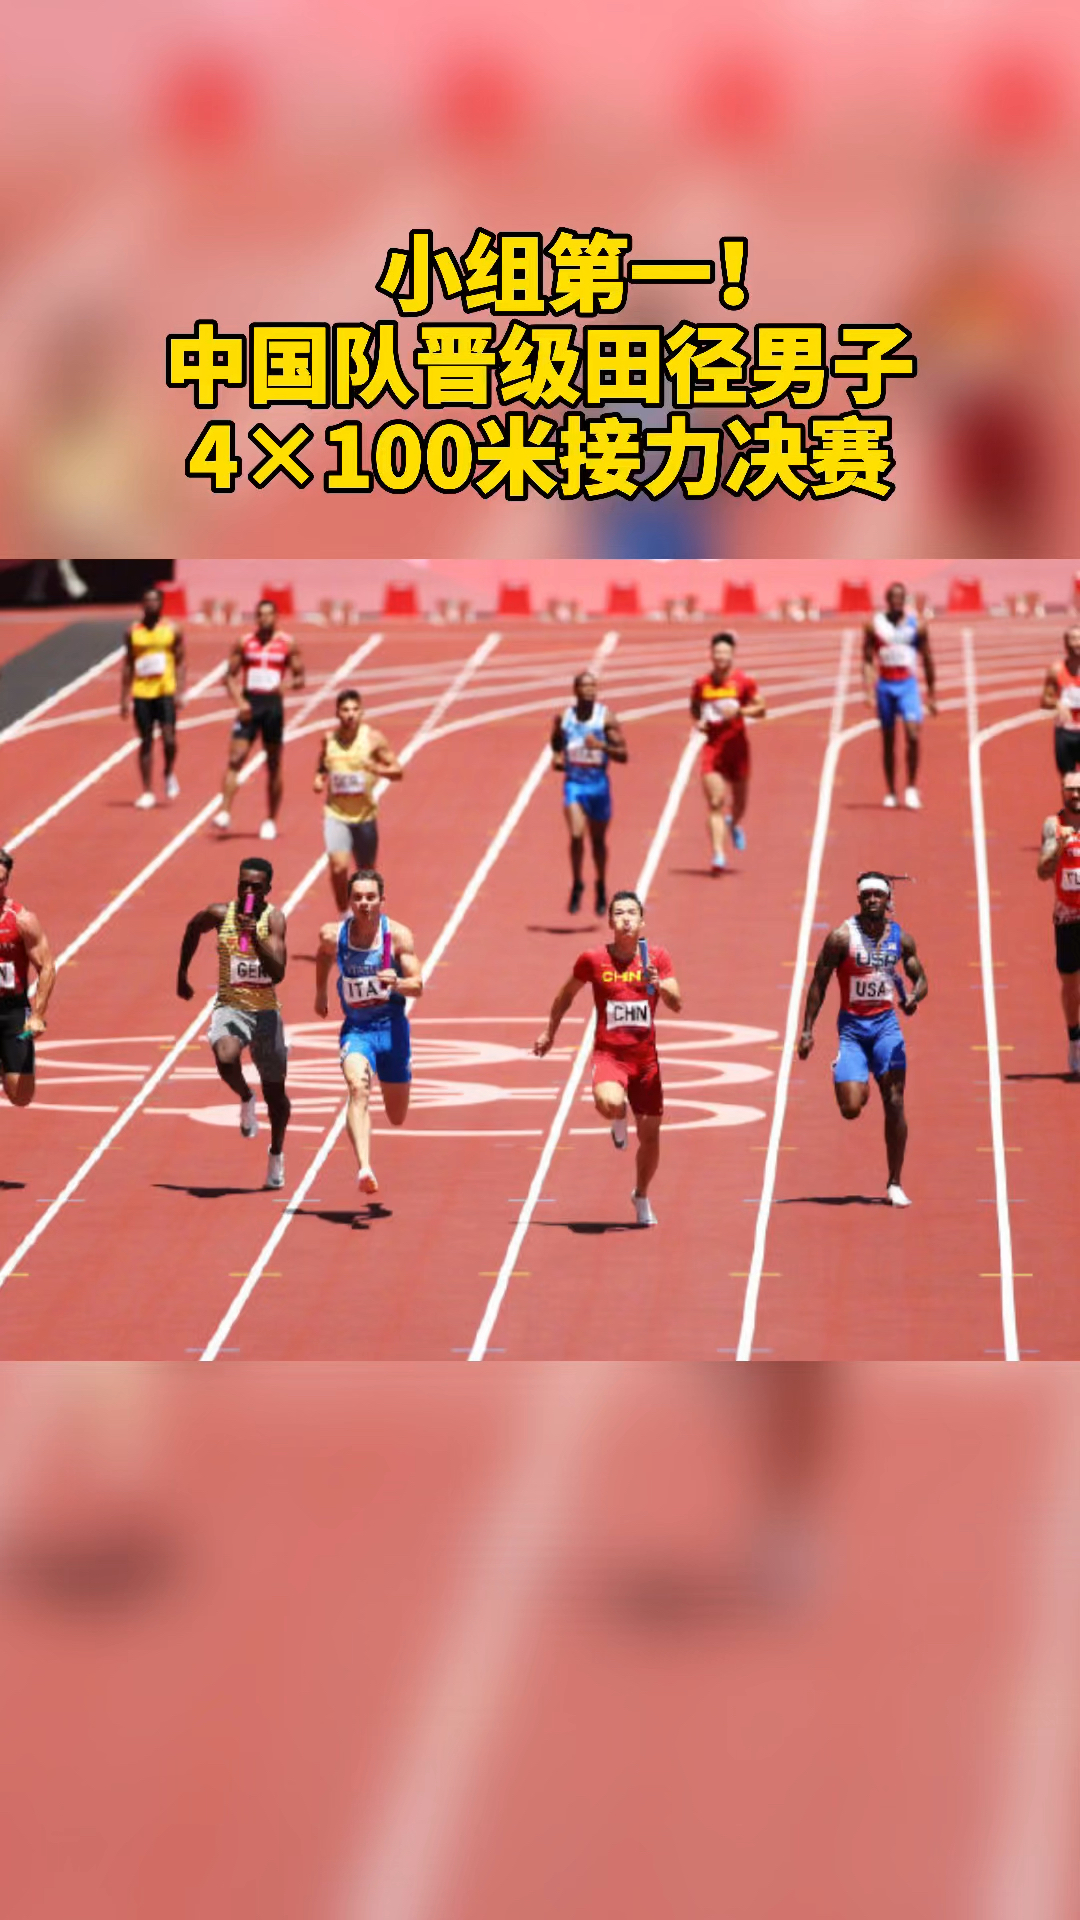 小组第一中国队晋级田径男子4100米接力决赛